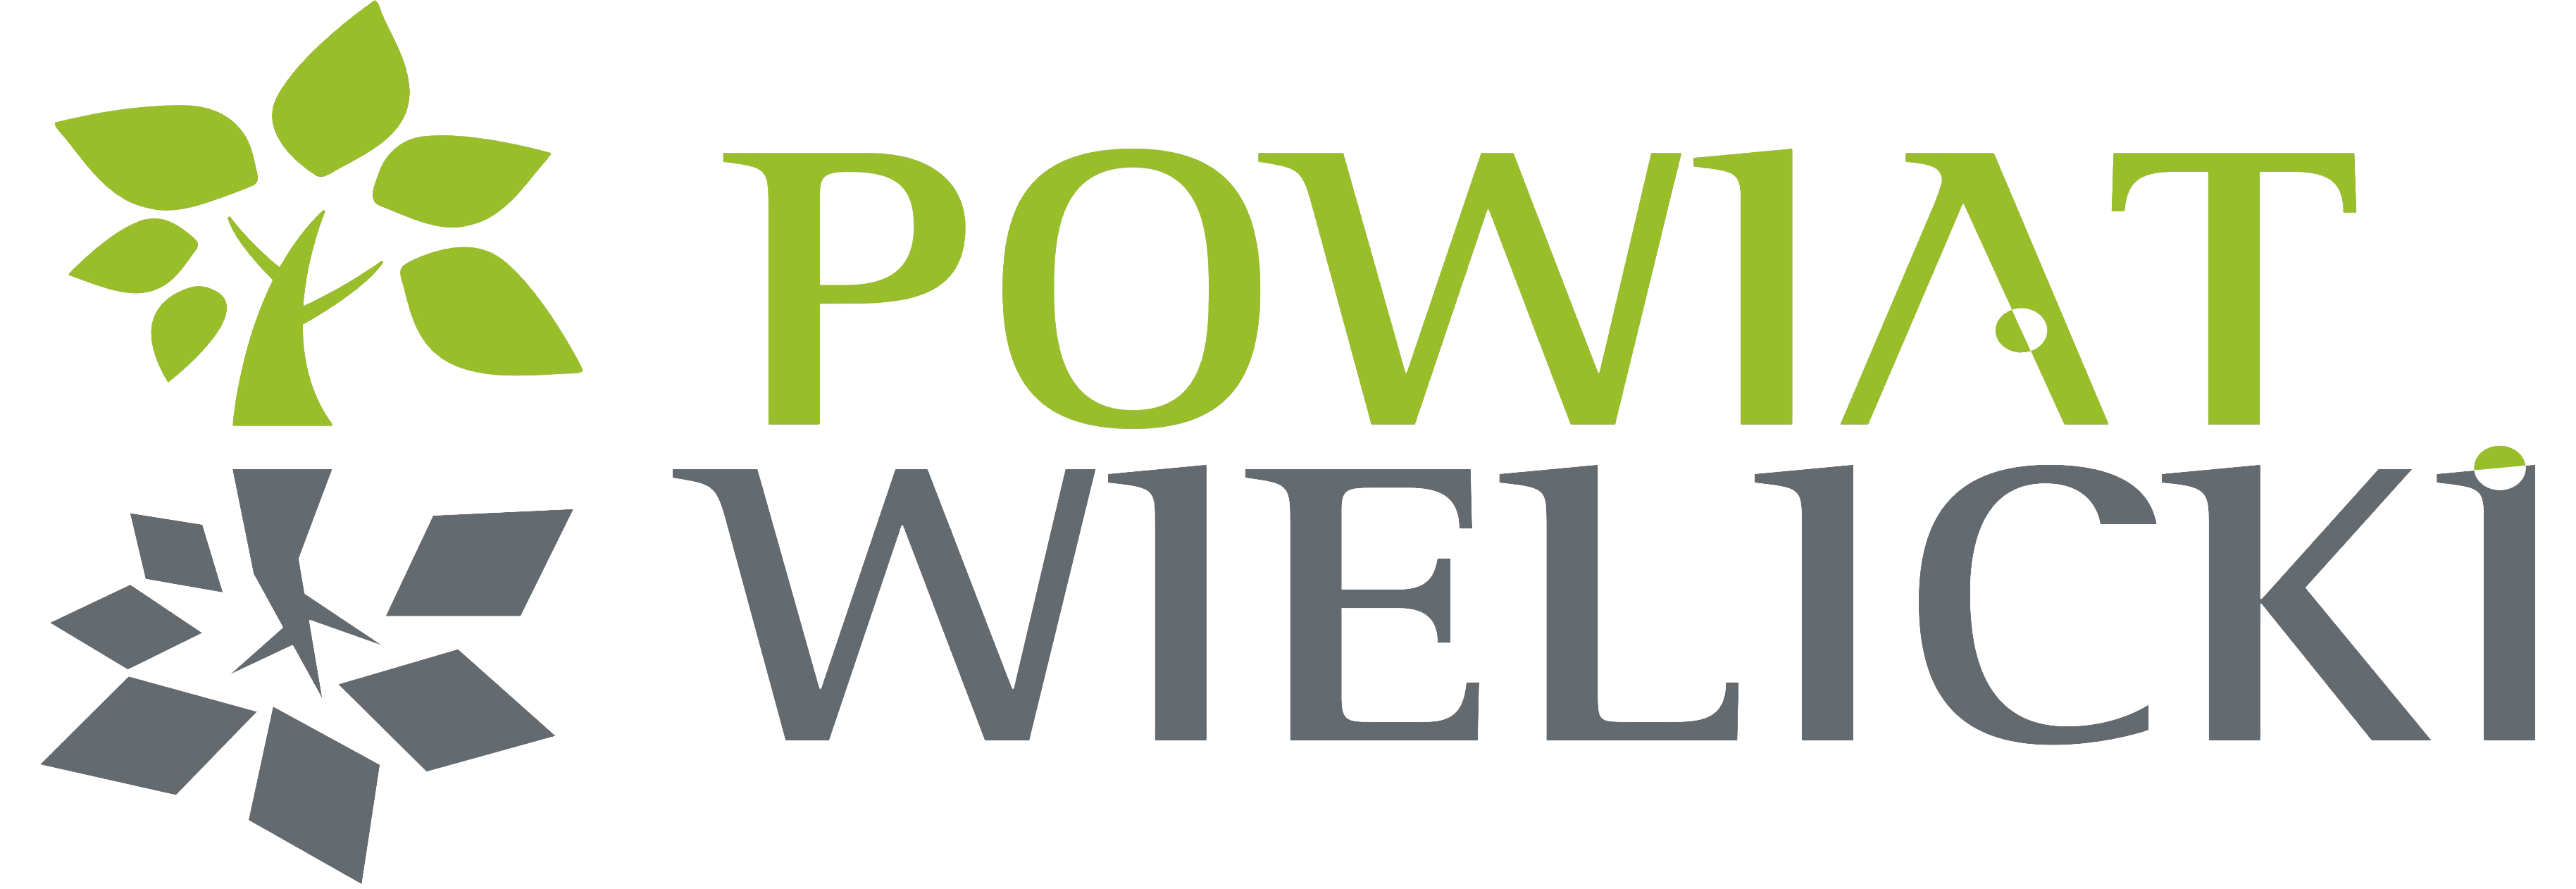 logo_powiatwielicki